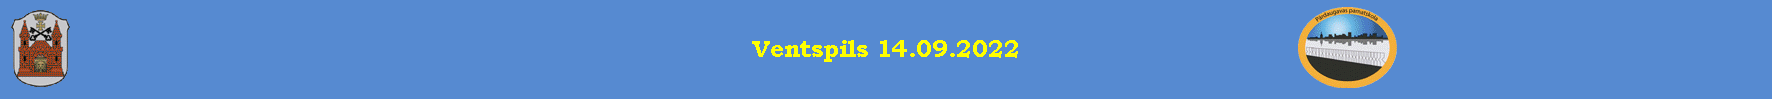 Ventspils 14.09.2022